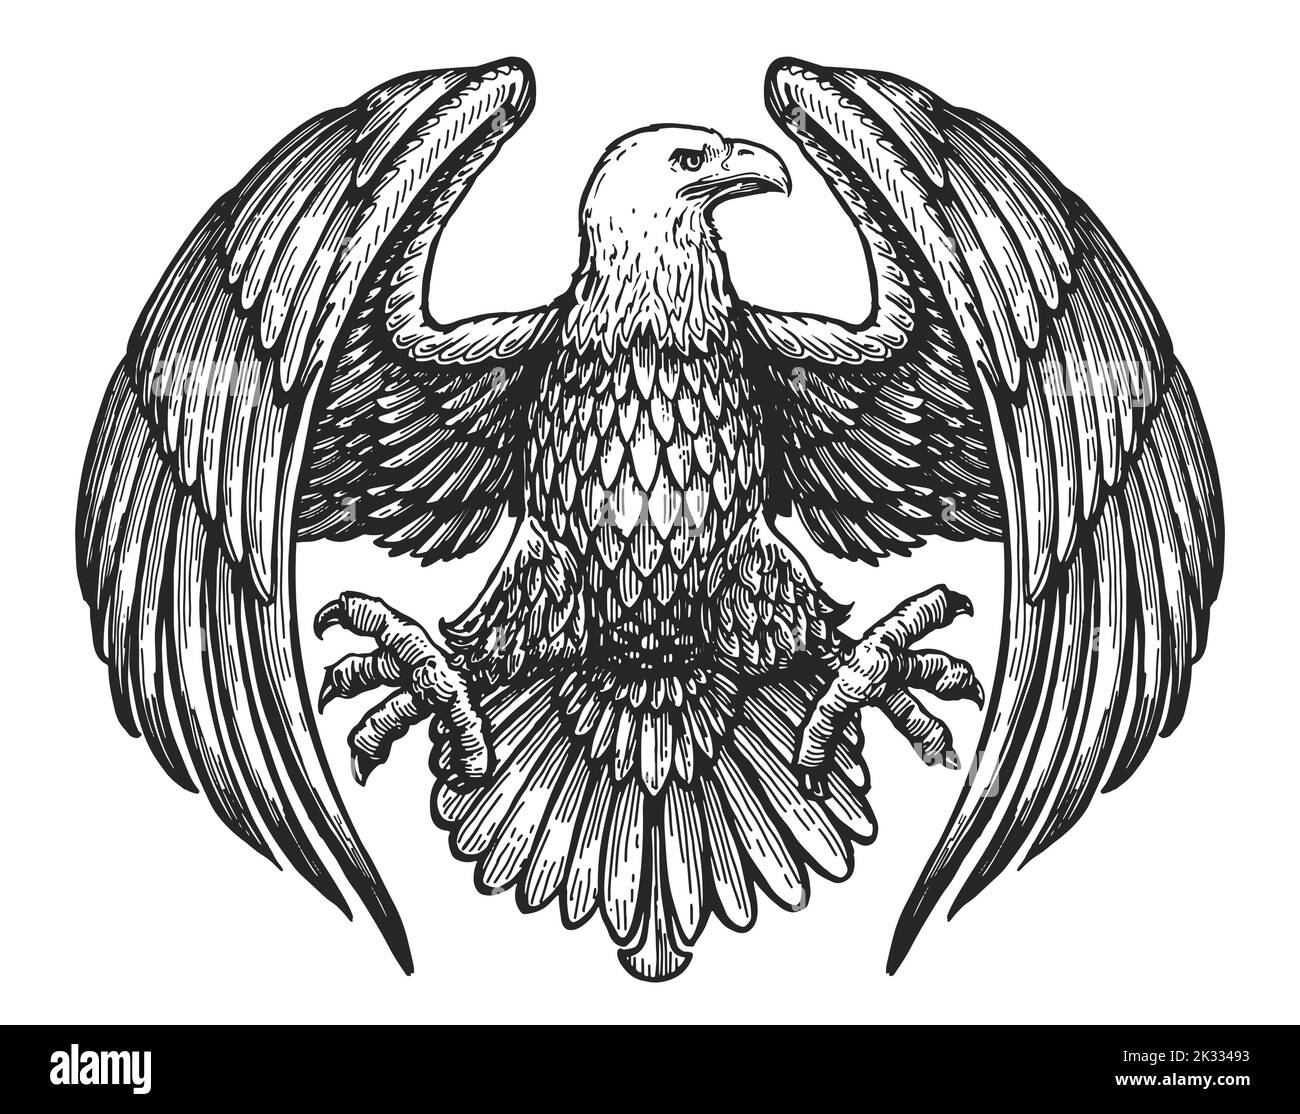 Águila con alas extendidas. Símbolo real. Boceto dibujado a mano en estilo grabado vintage. Ilustración vectorial Ilustración del Vector